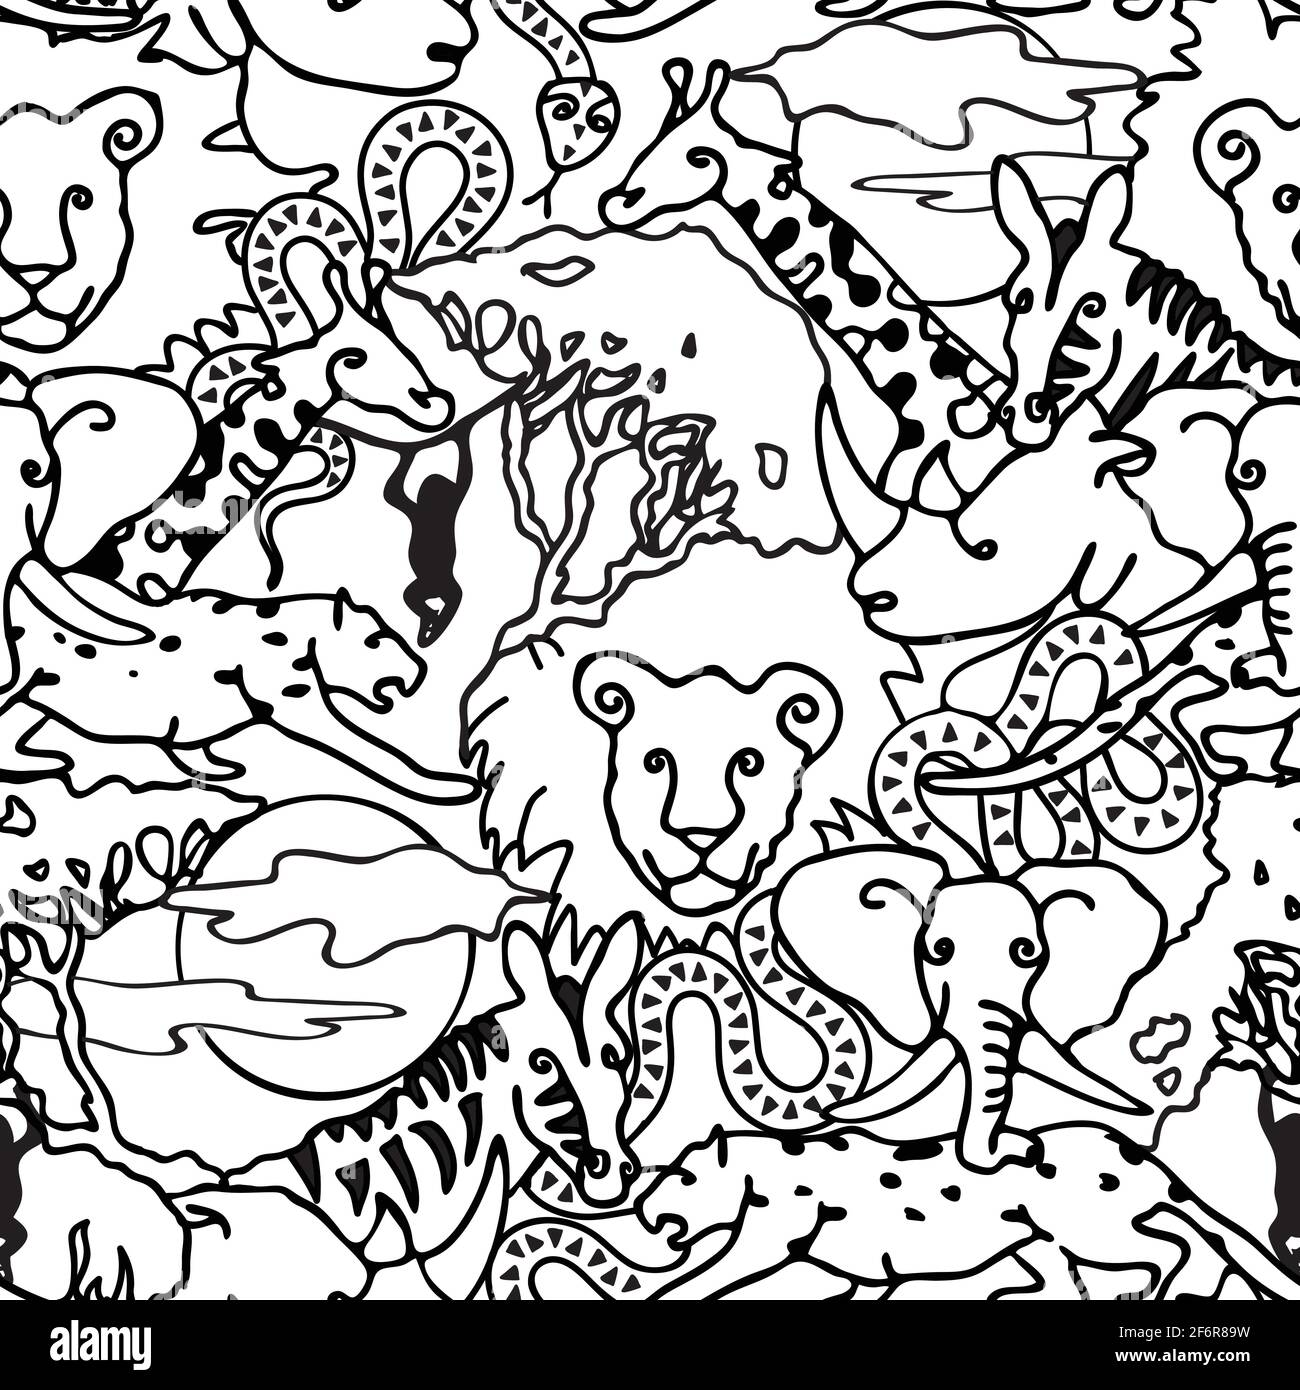 Lustiges Deko Nilpferd im Streifen Design - Tierische Kunst